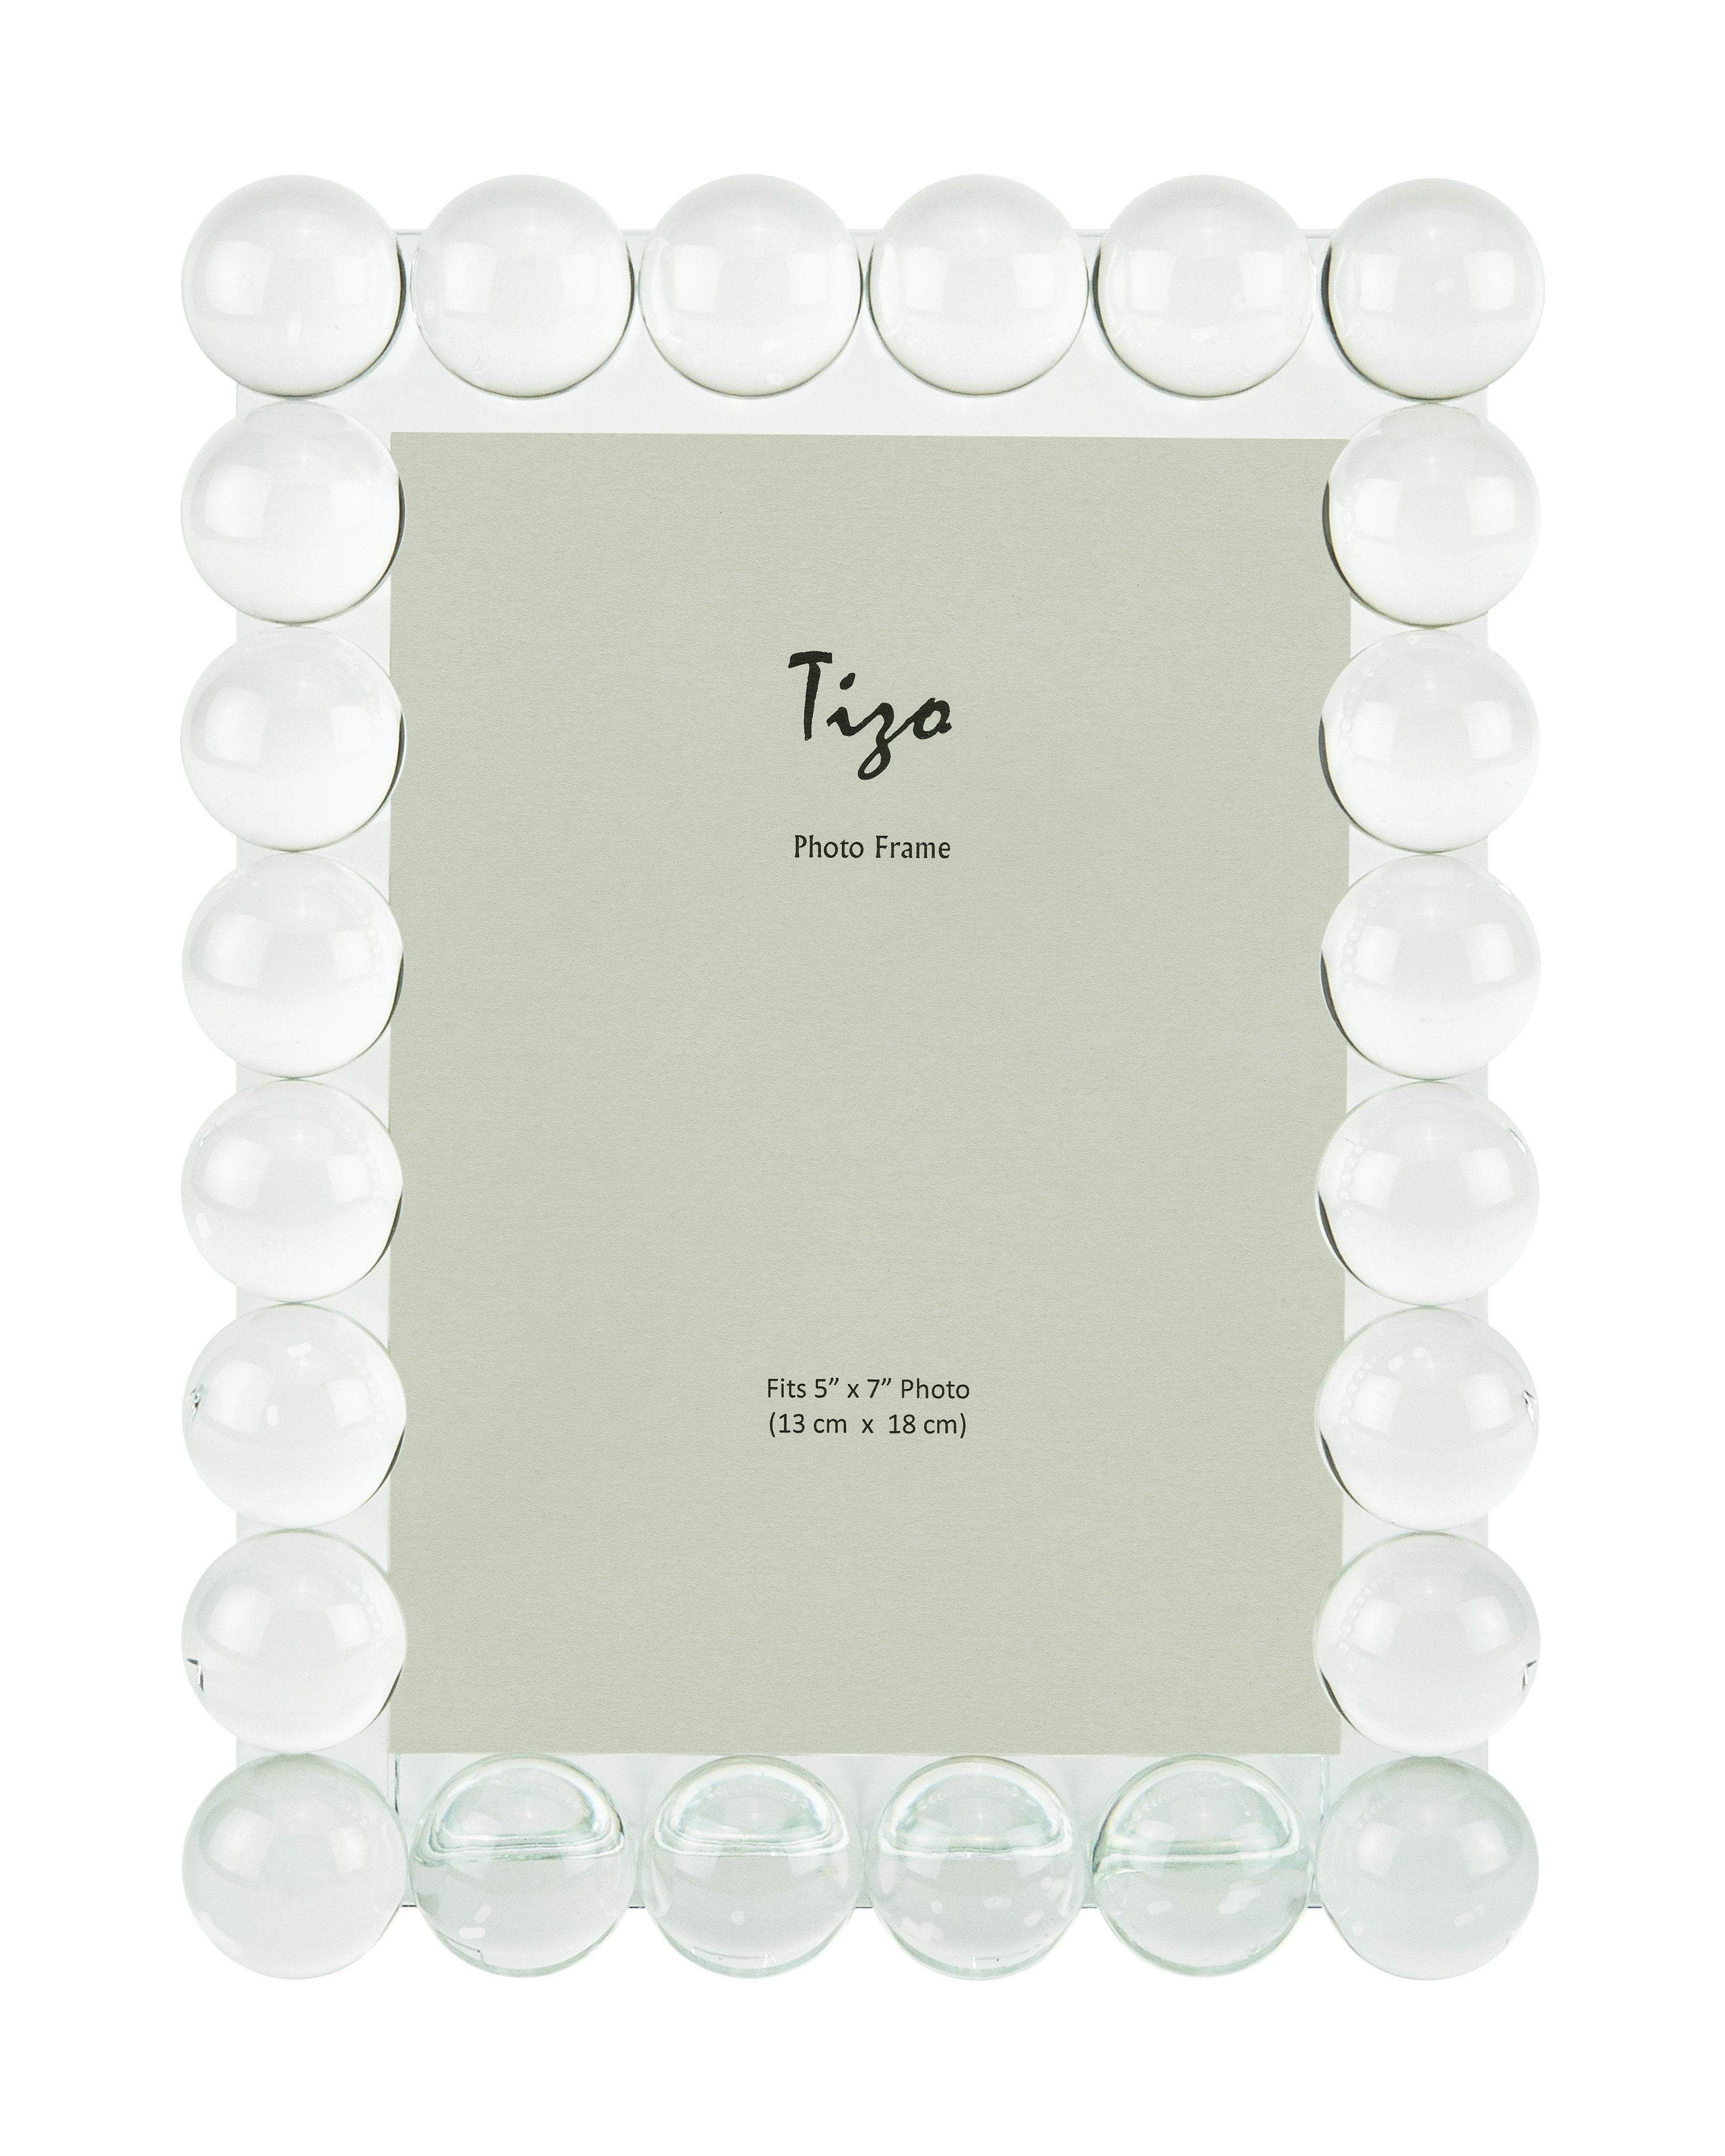 Tizo Designs Picture Frames Tizo Clear Glass Bubble Frame - 4x6